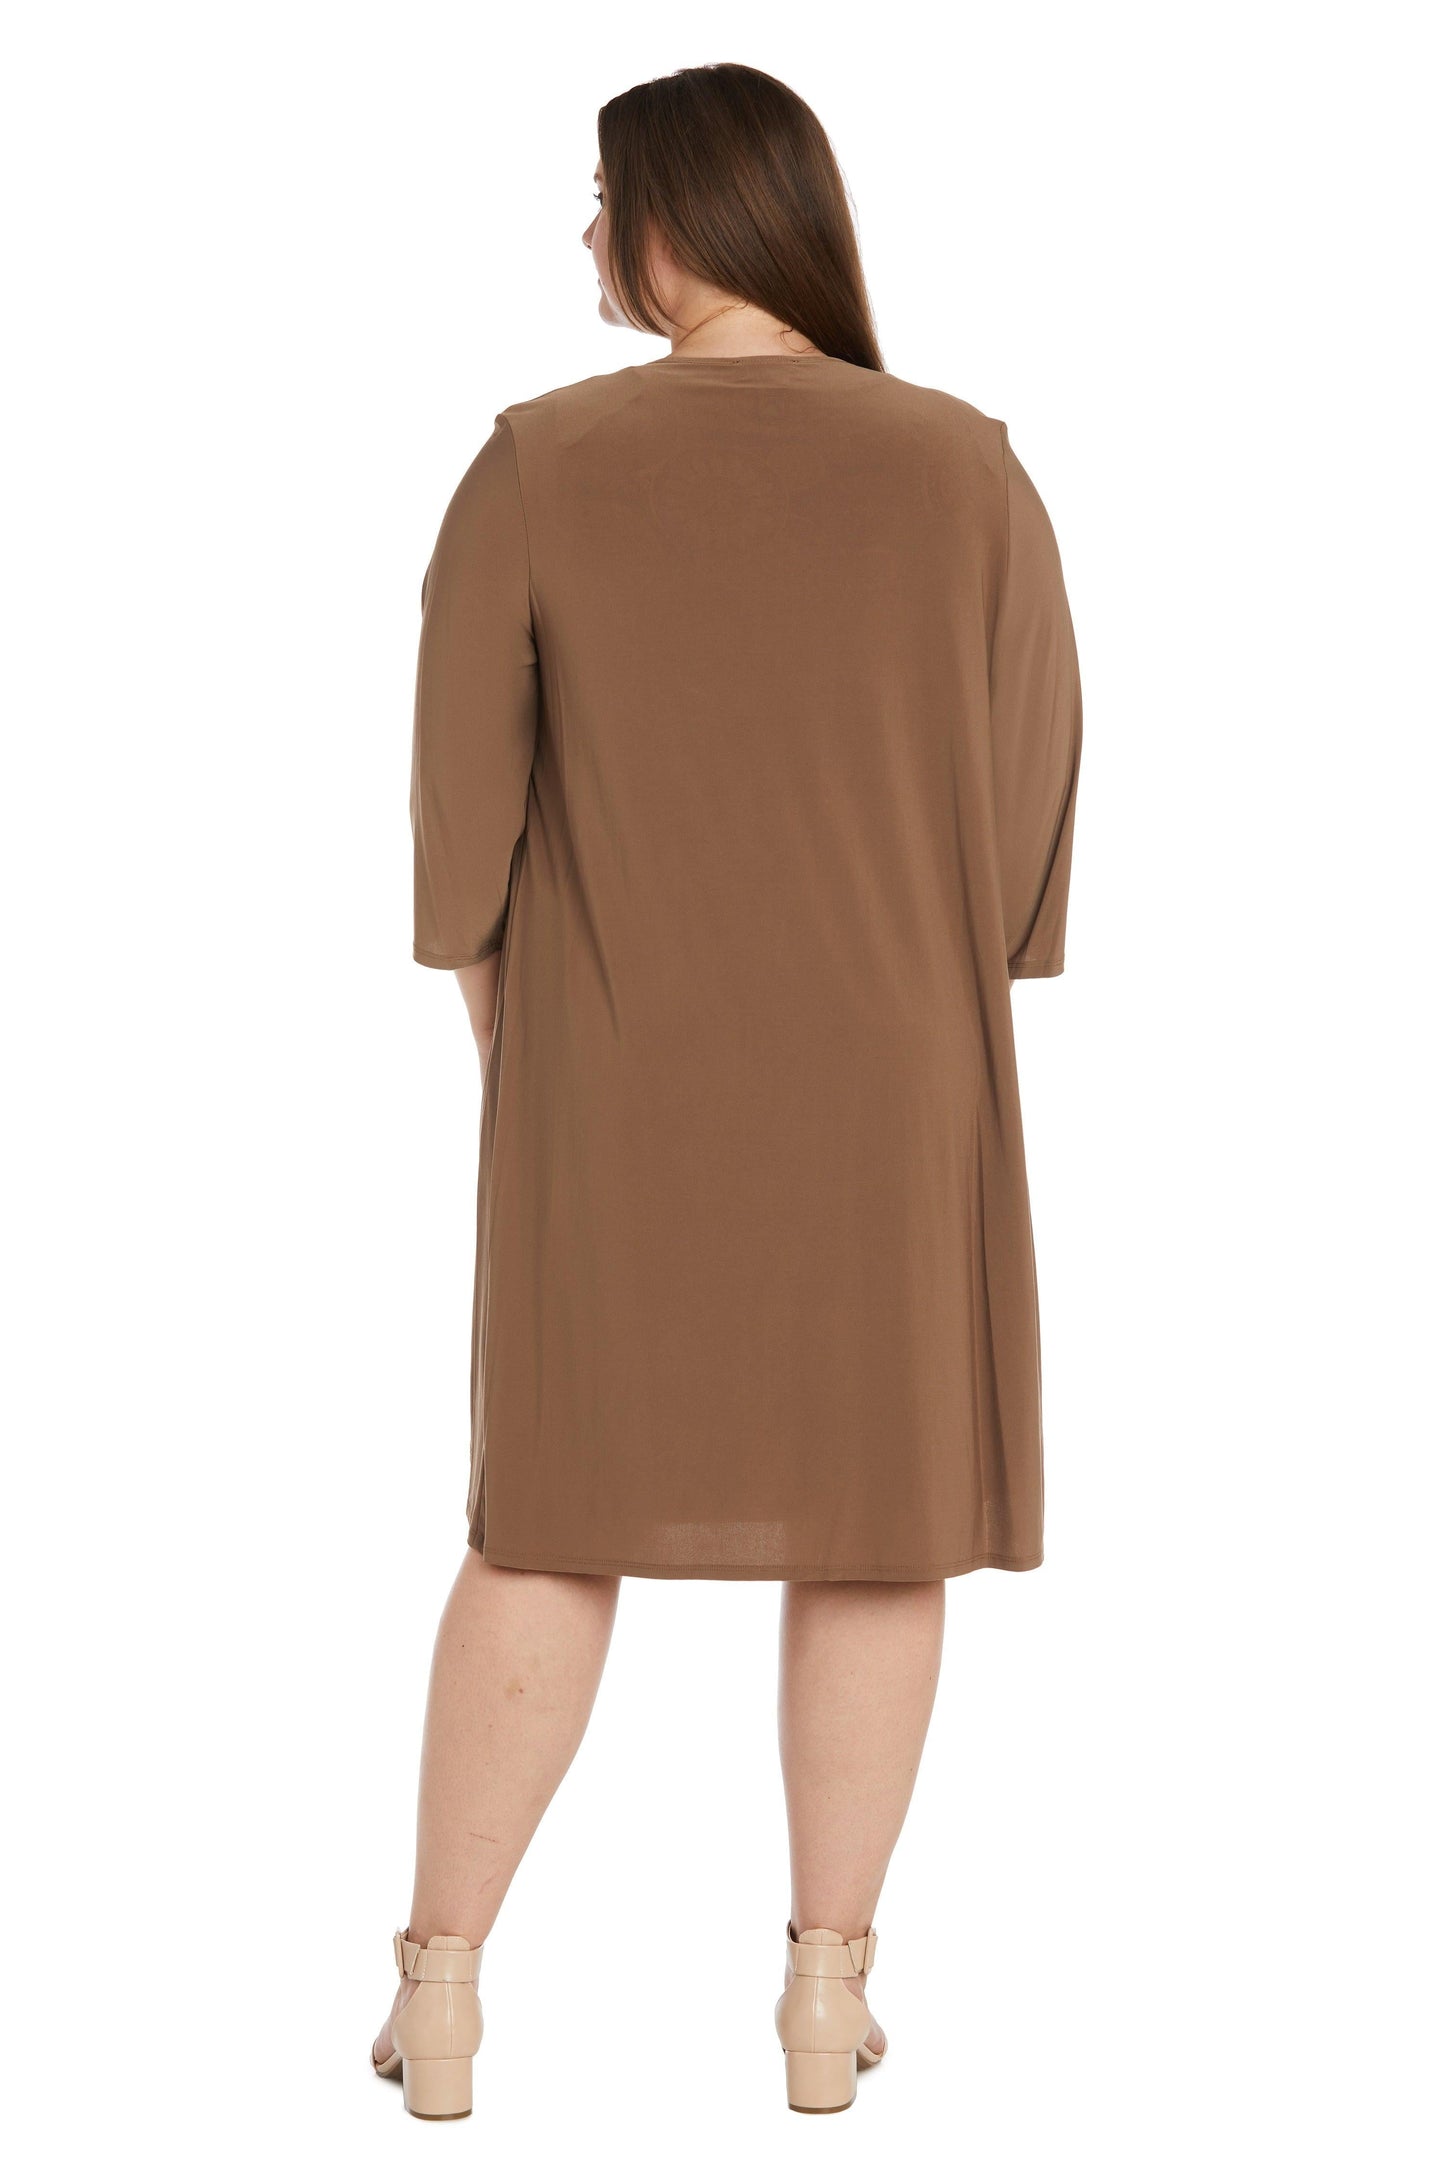 R&M Richards Plus Size Short Jacket Dress 7907W - The Dress Outlet